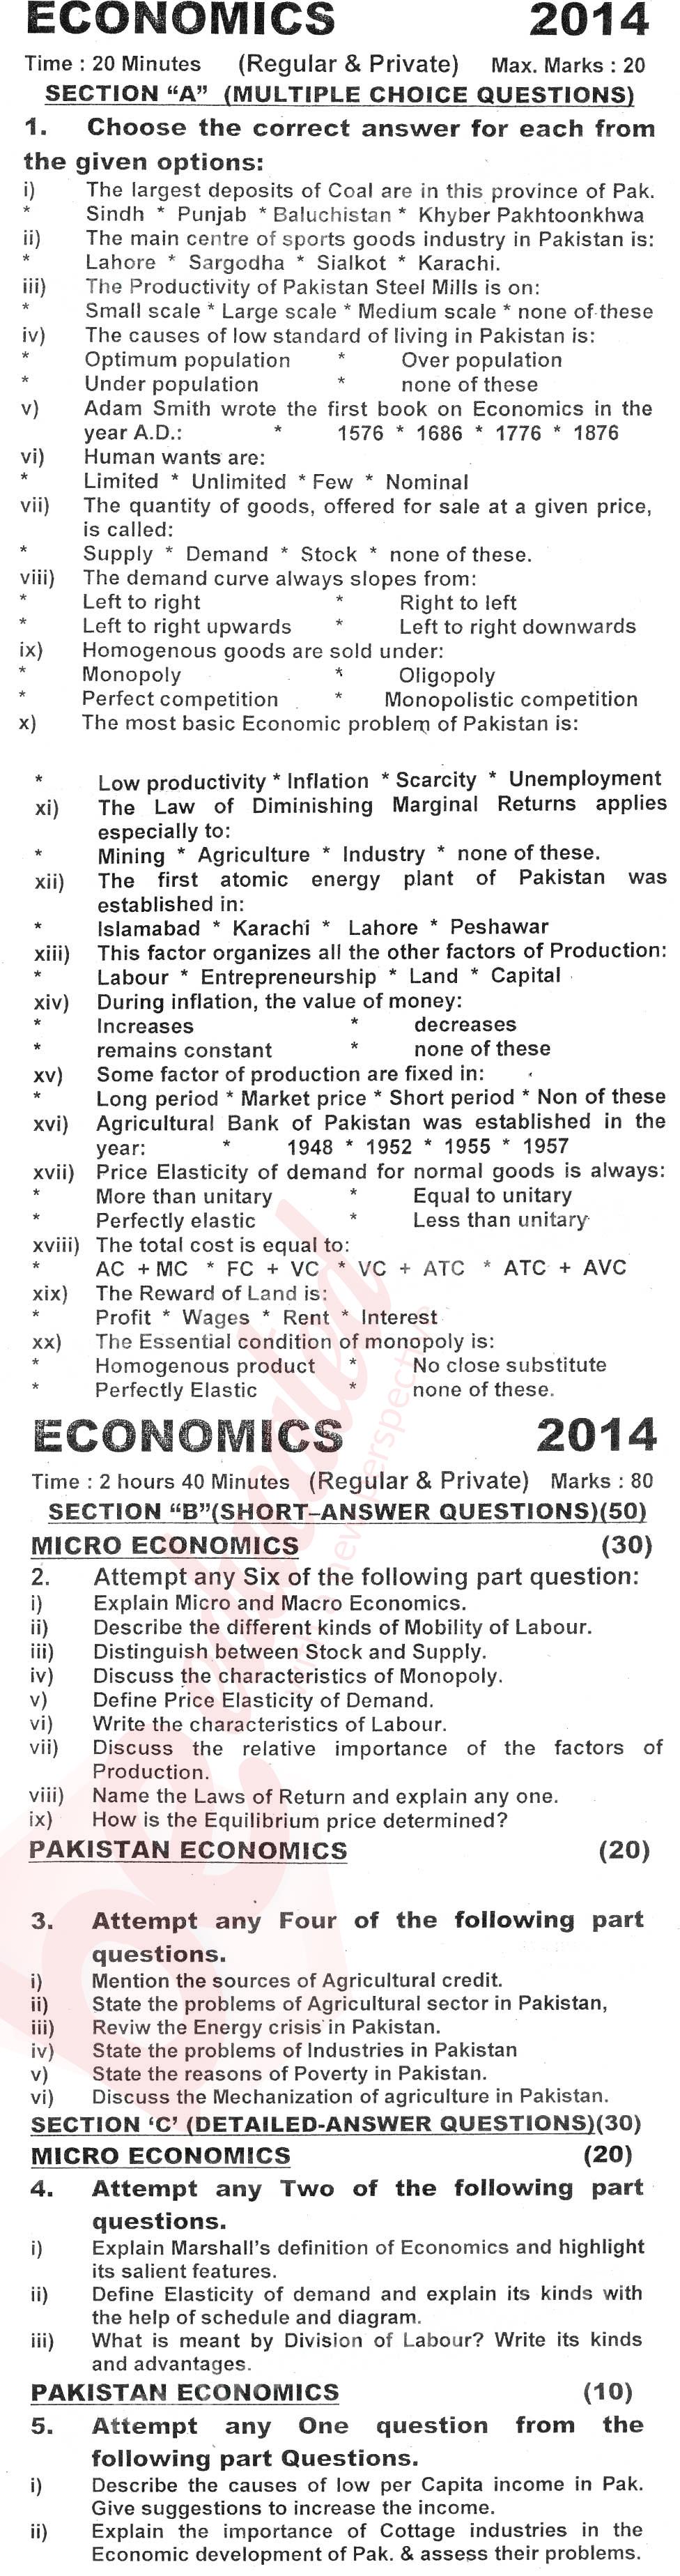 Economics FA Part 1 Past Paper Group 1 KPBTE 2014